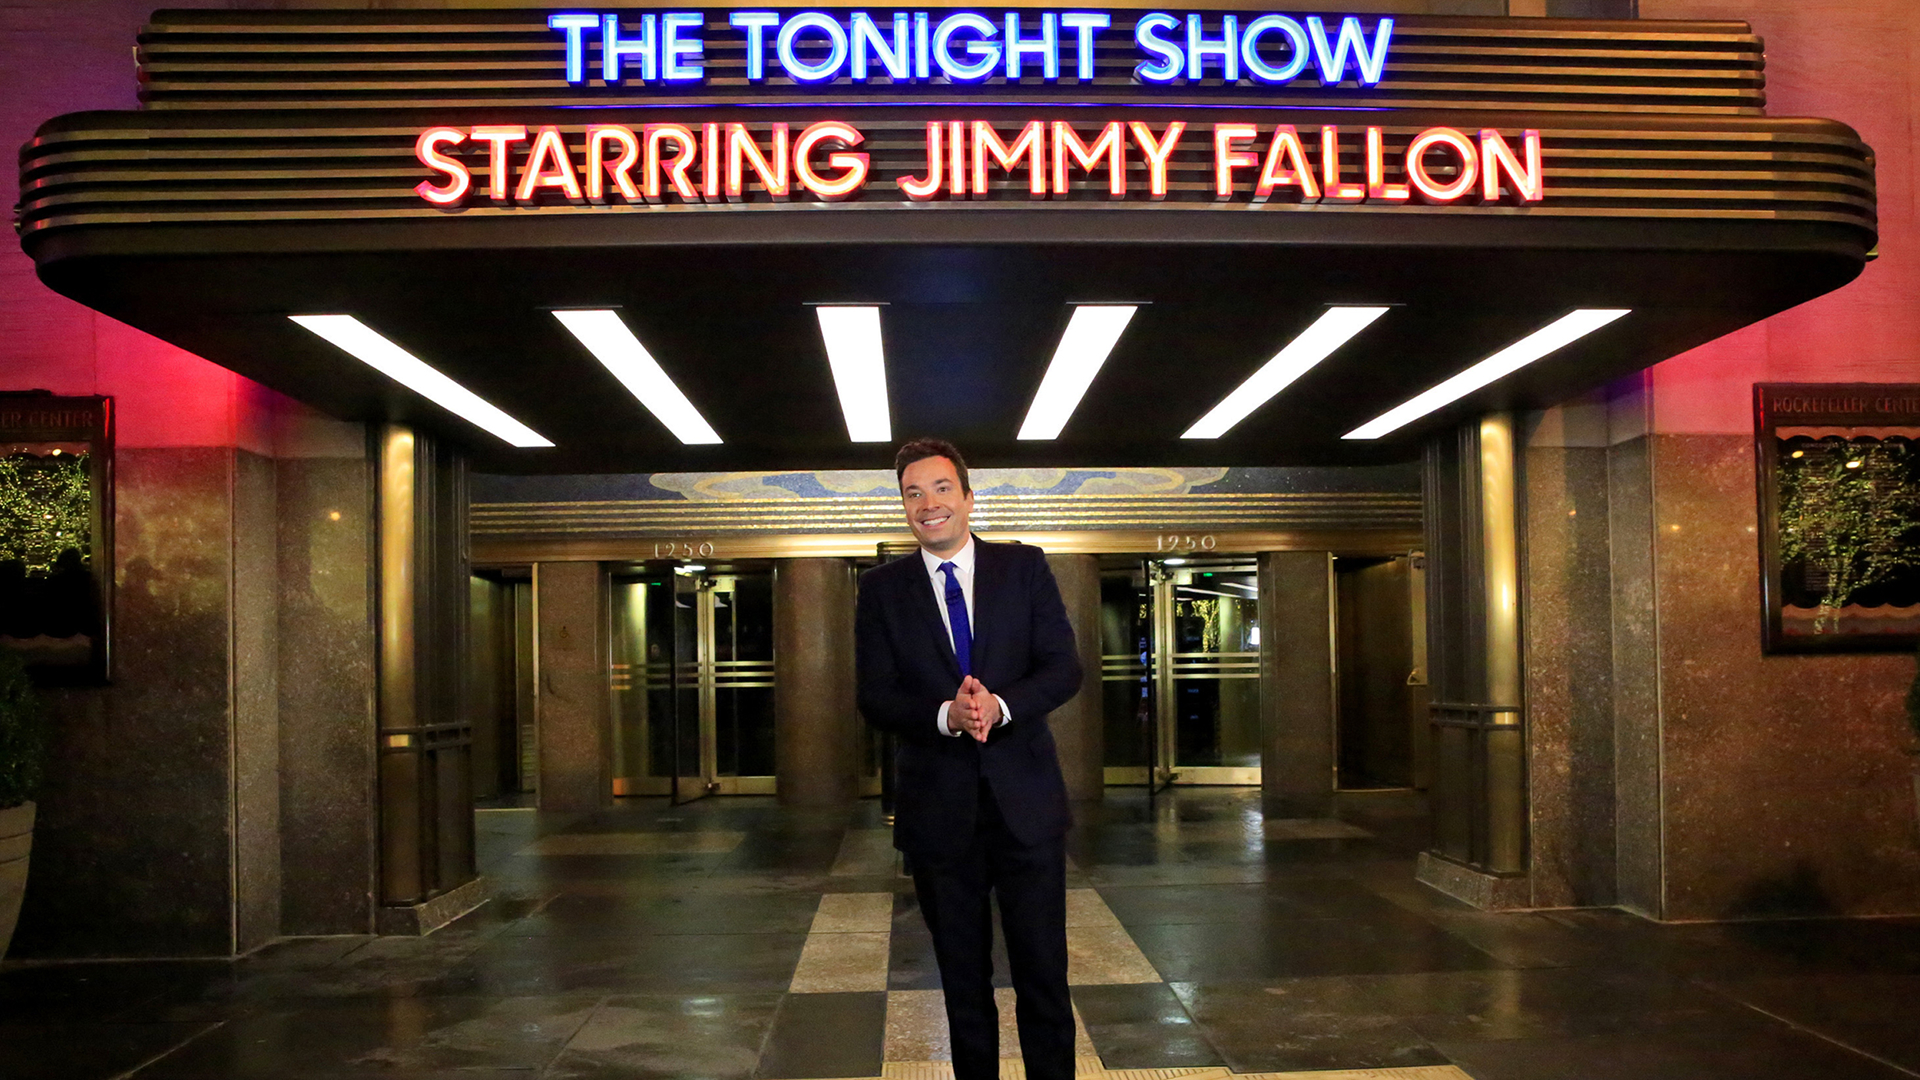 Descargar fondos de escritorio de The Tonight Show Starring Jimmy Fallon HD